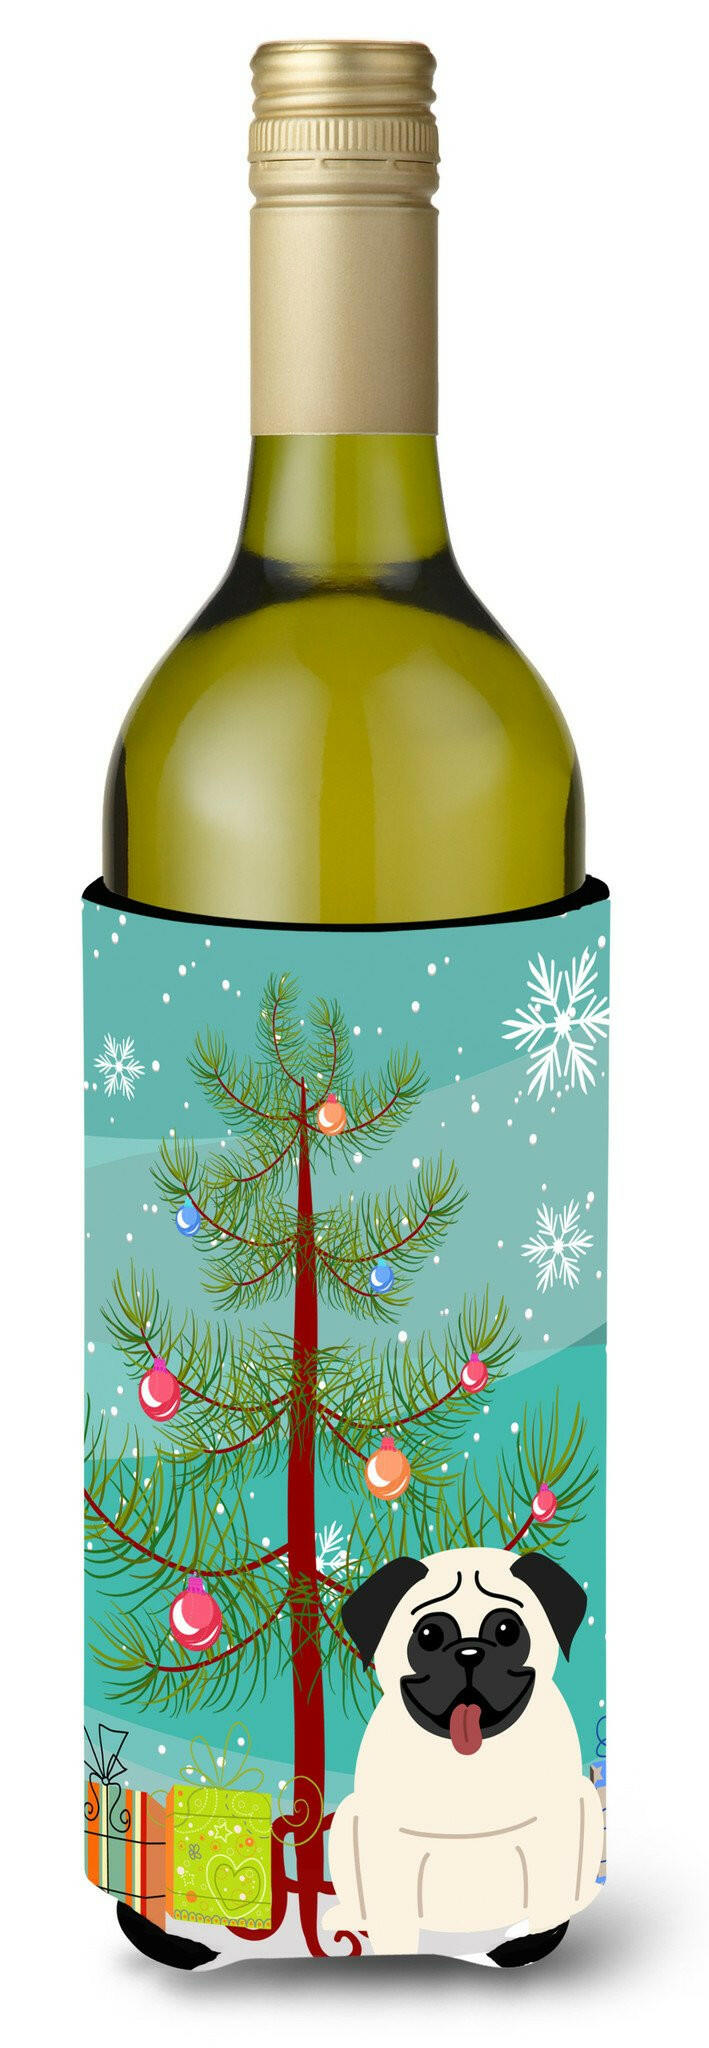 Merry Christmas Tree Pug Cream Wine Bottle Beverge Insulator Hugger BB4129LITERK by Caroline's Treasures